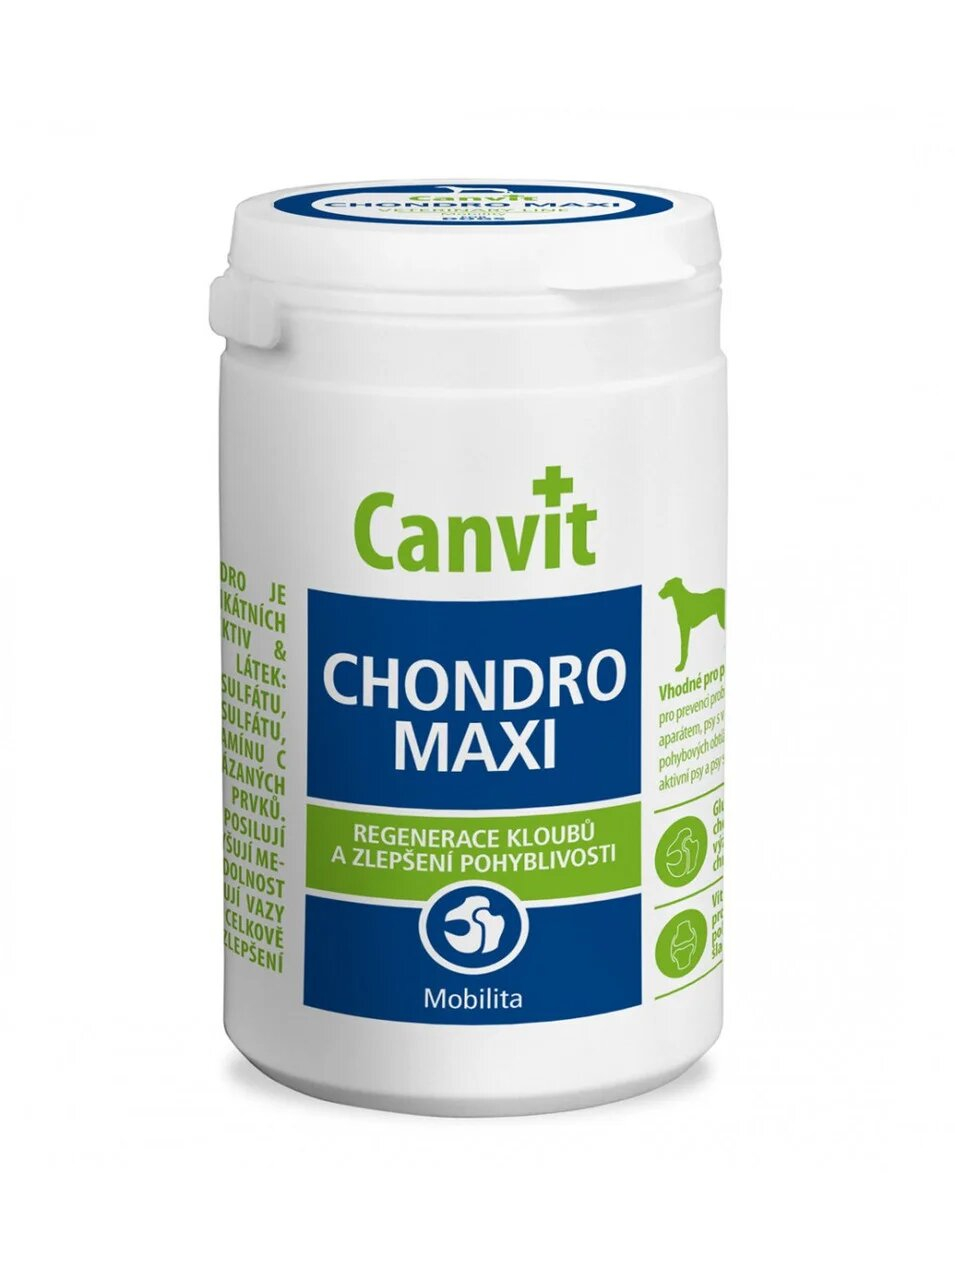 Canvit CHONDRO MAXI Кормовая добавка для регенерации суставов и улучшение подвижности